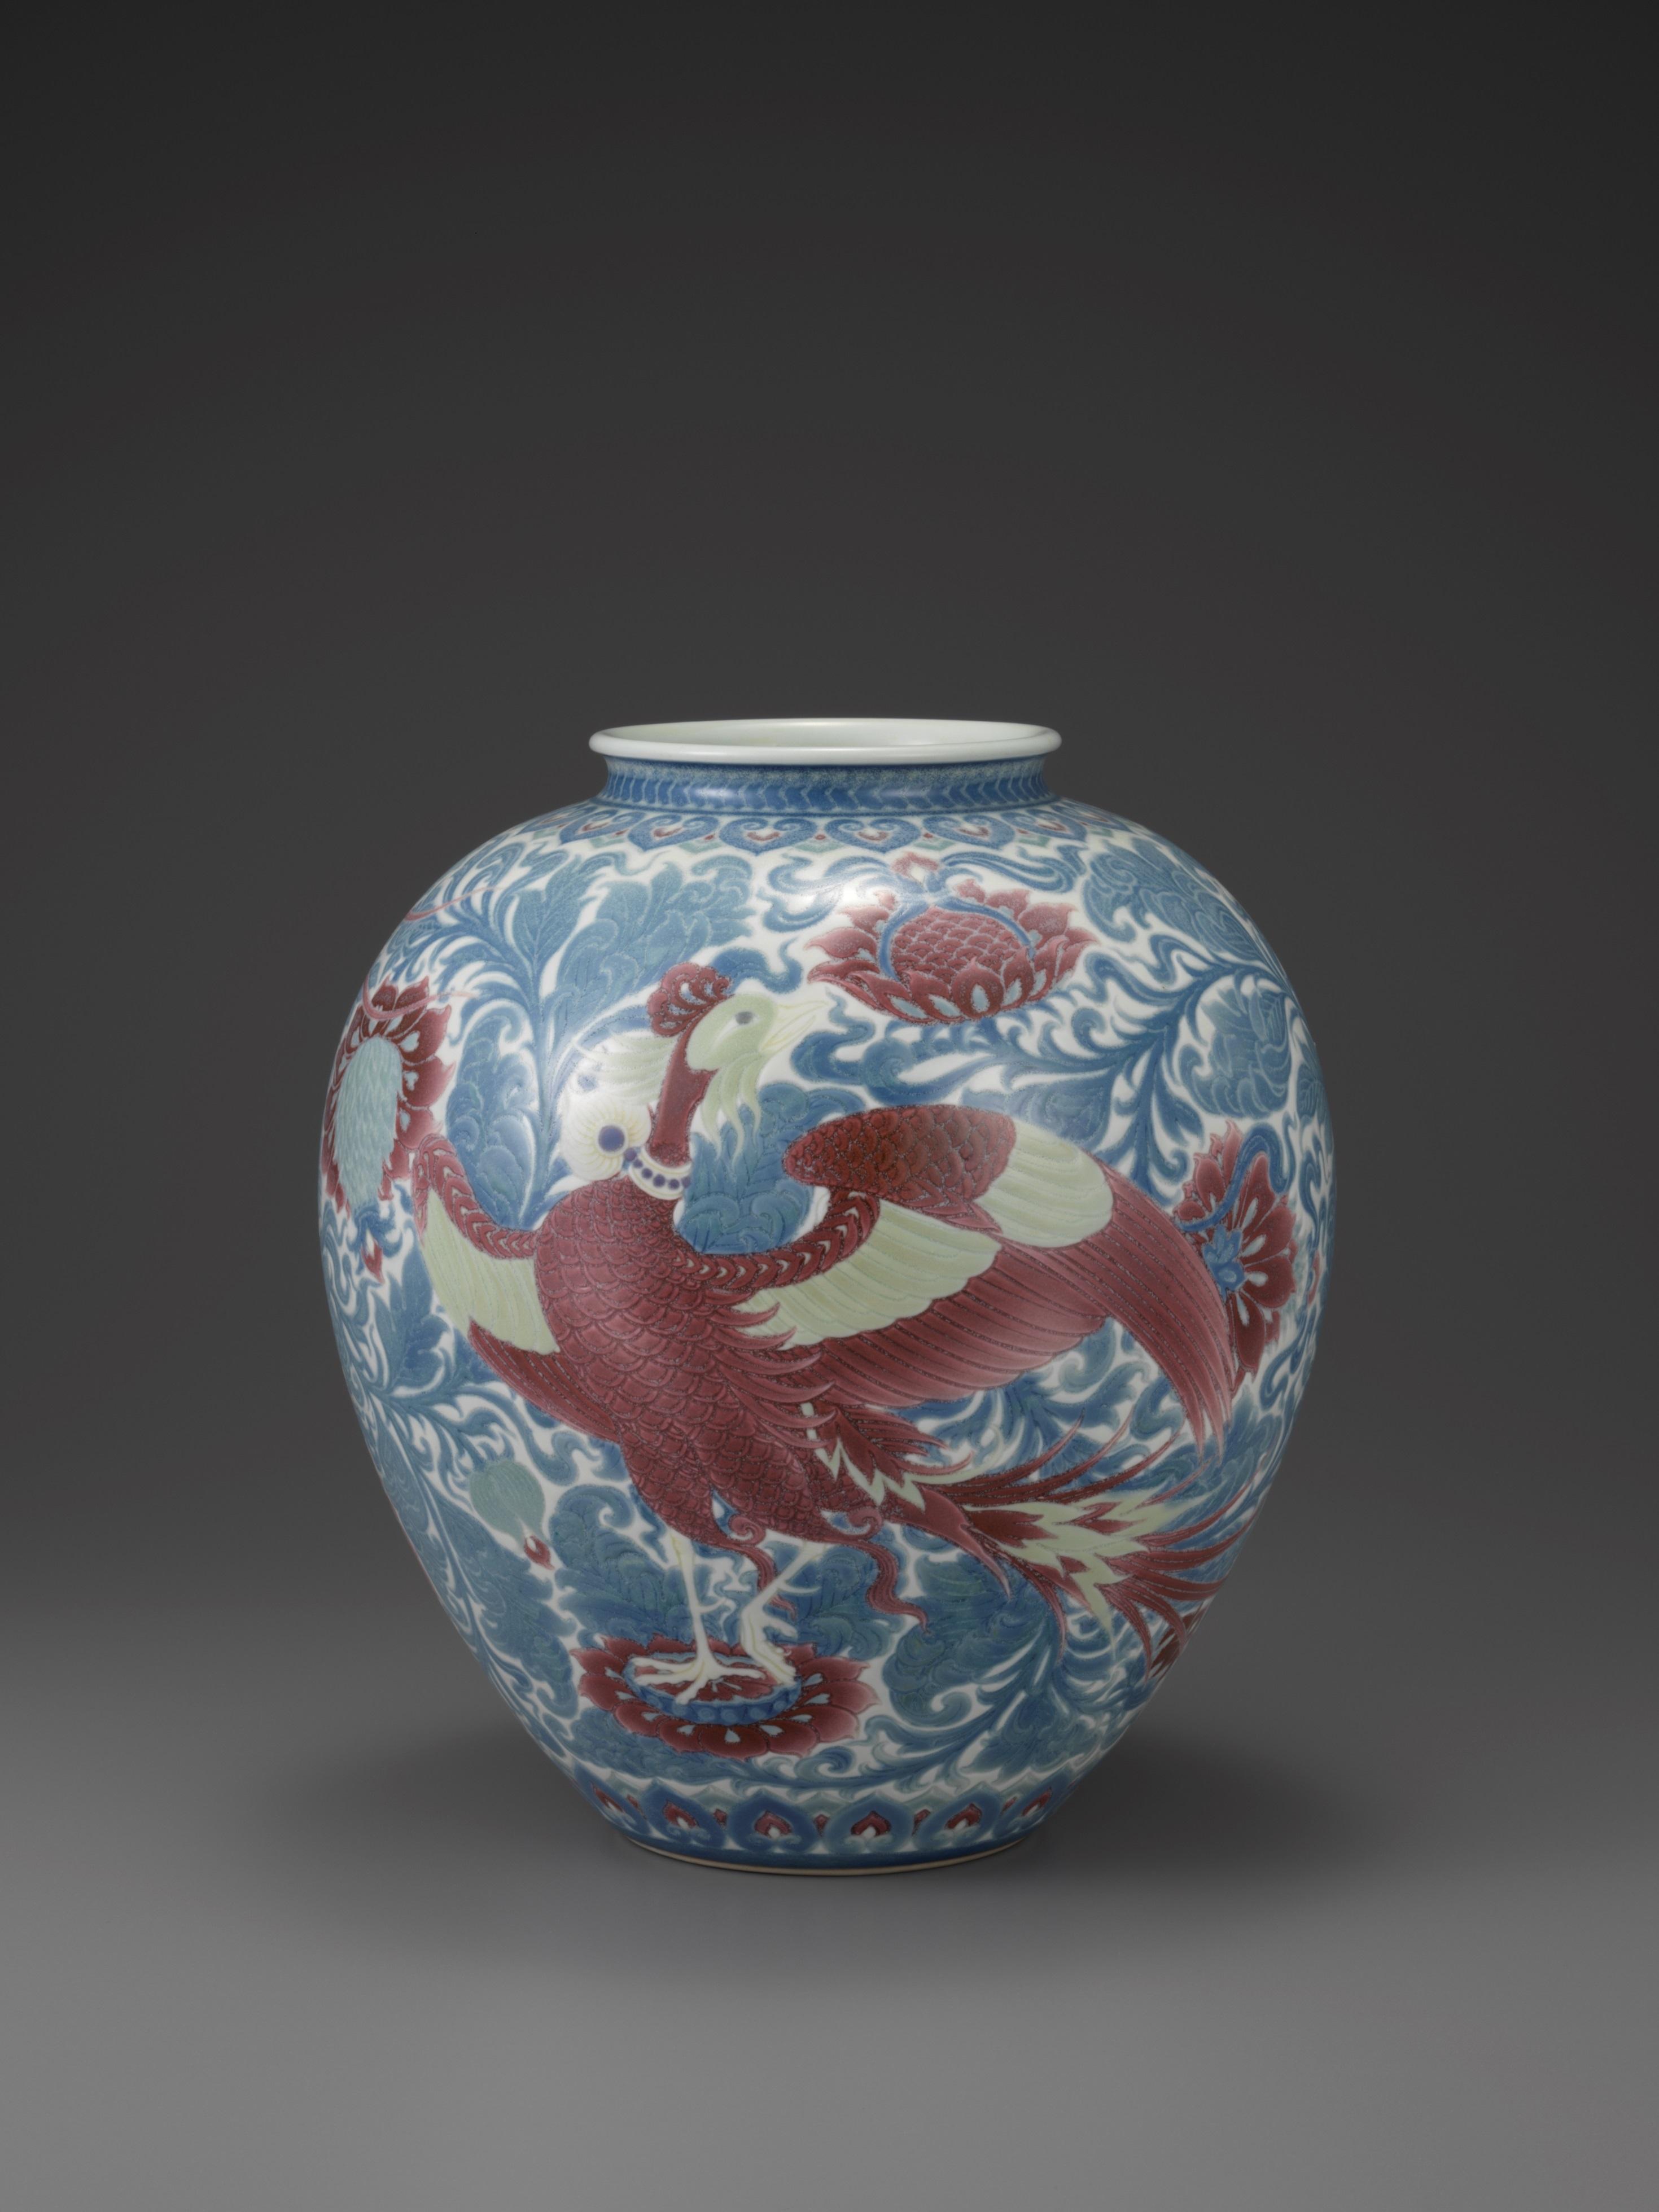 (6)板谷波山「葆光彩磁鳳凰文花瓶」裏側画像1923年個人蔵